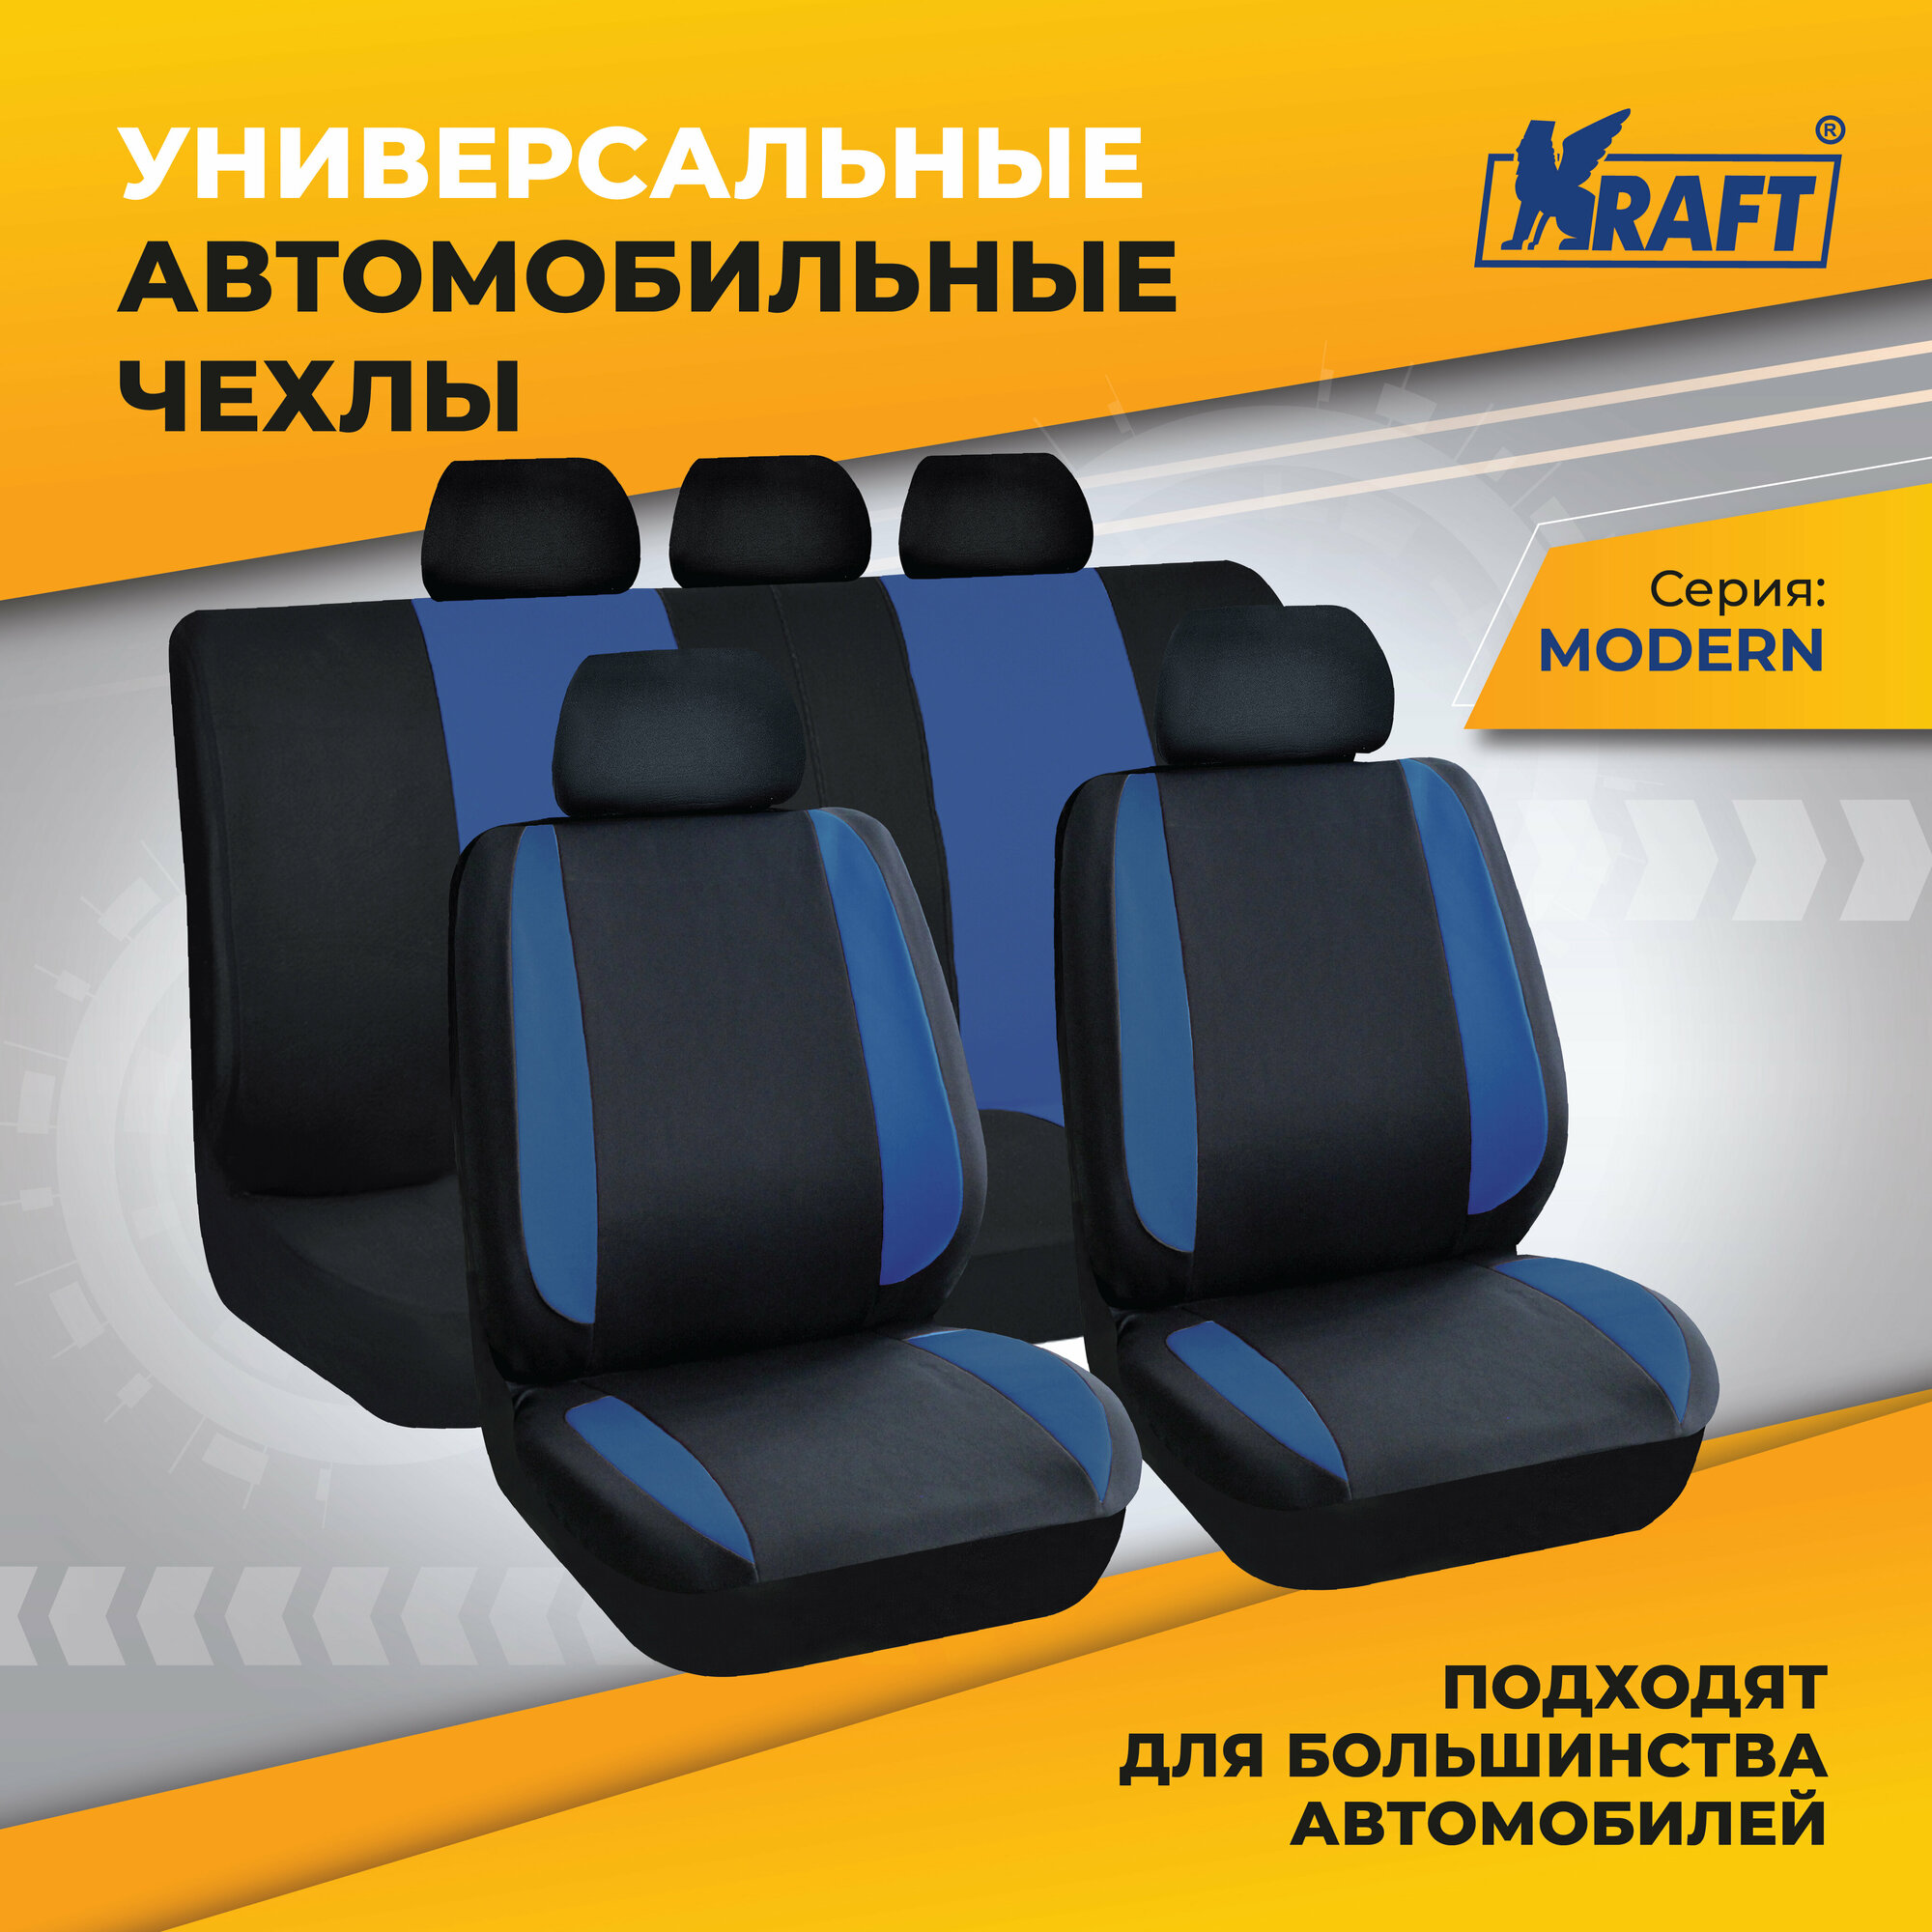 Чехлы универсальные на автомобильные сиденья, комплект "MODERN", полиэстер, черно-синие